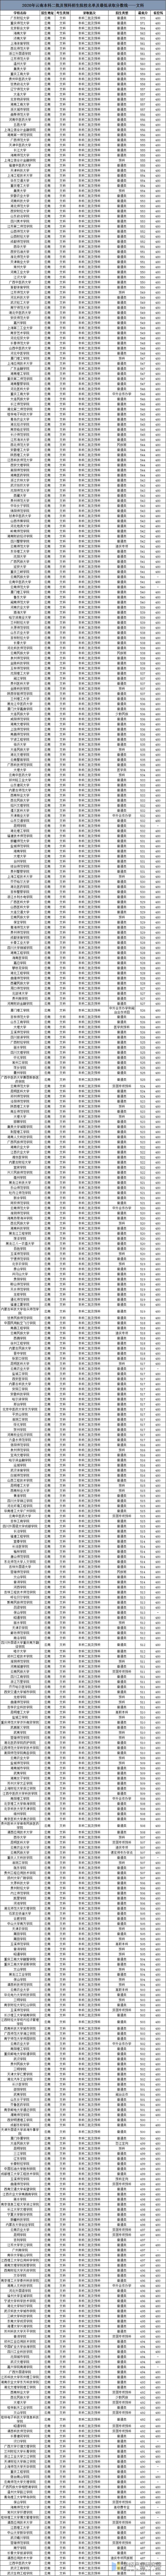 2020年云南高考本科二批及预科招生院校名单及最低录取分数线——文科